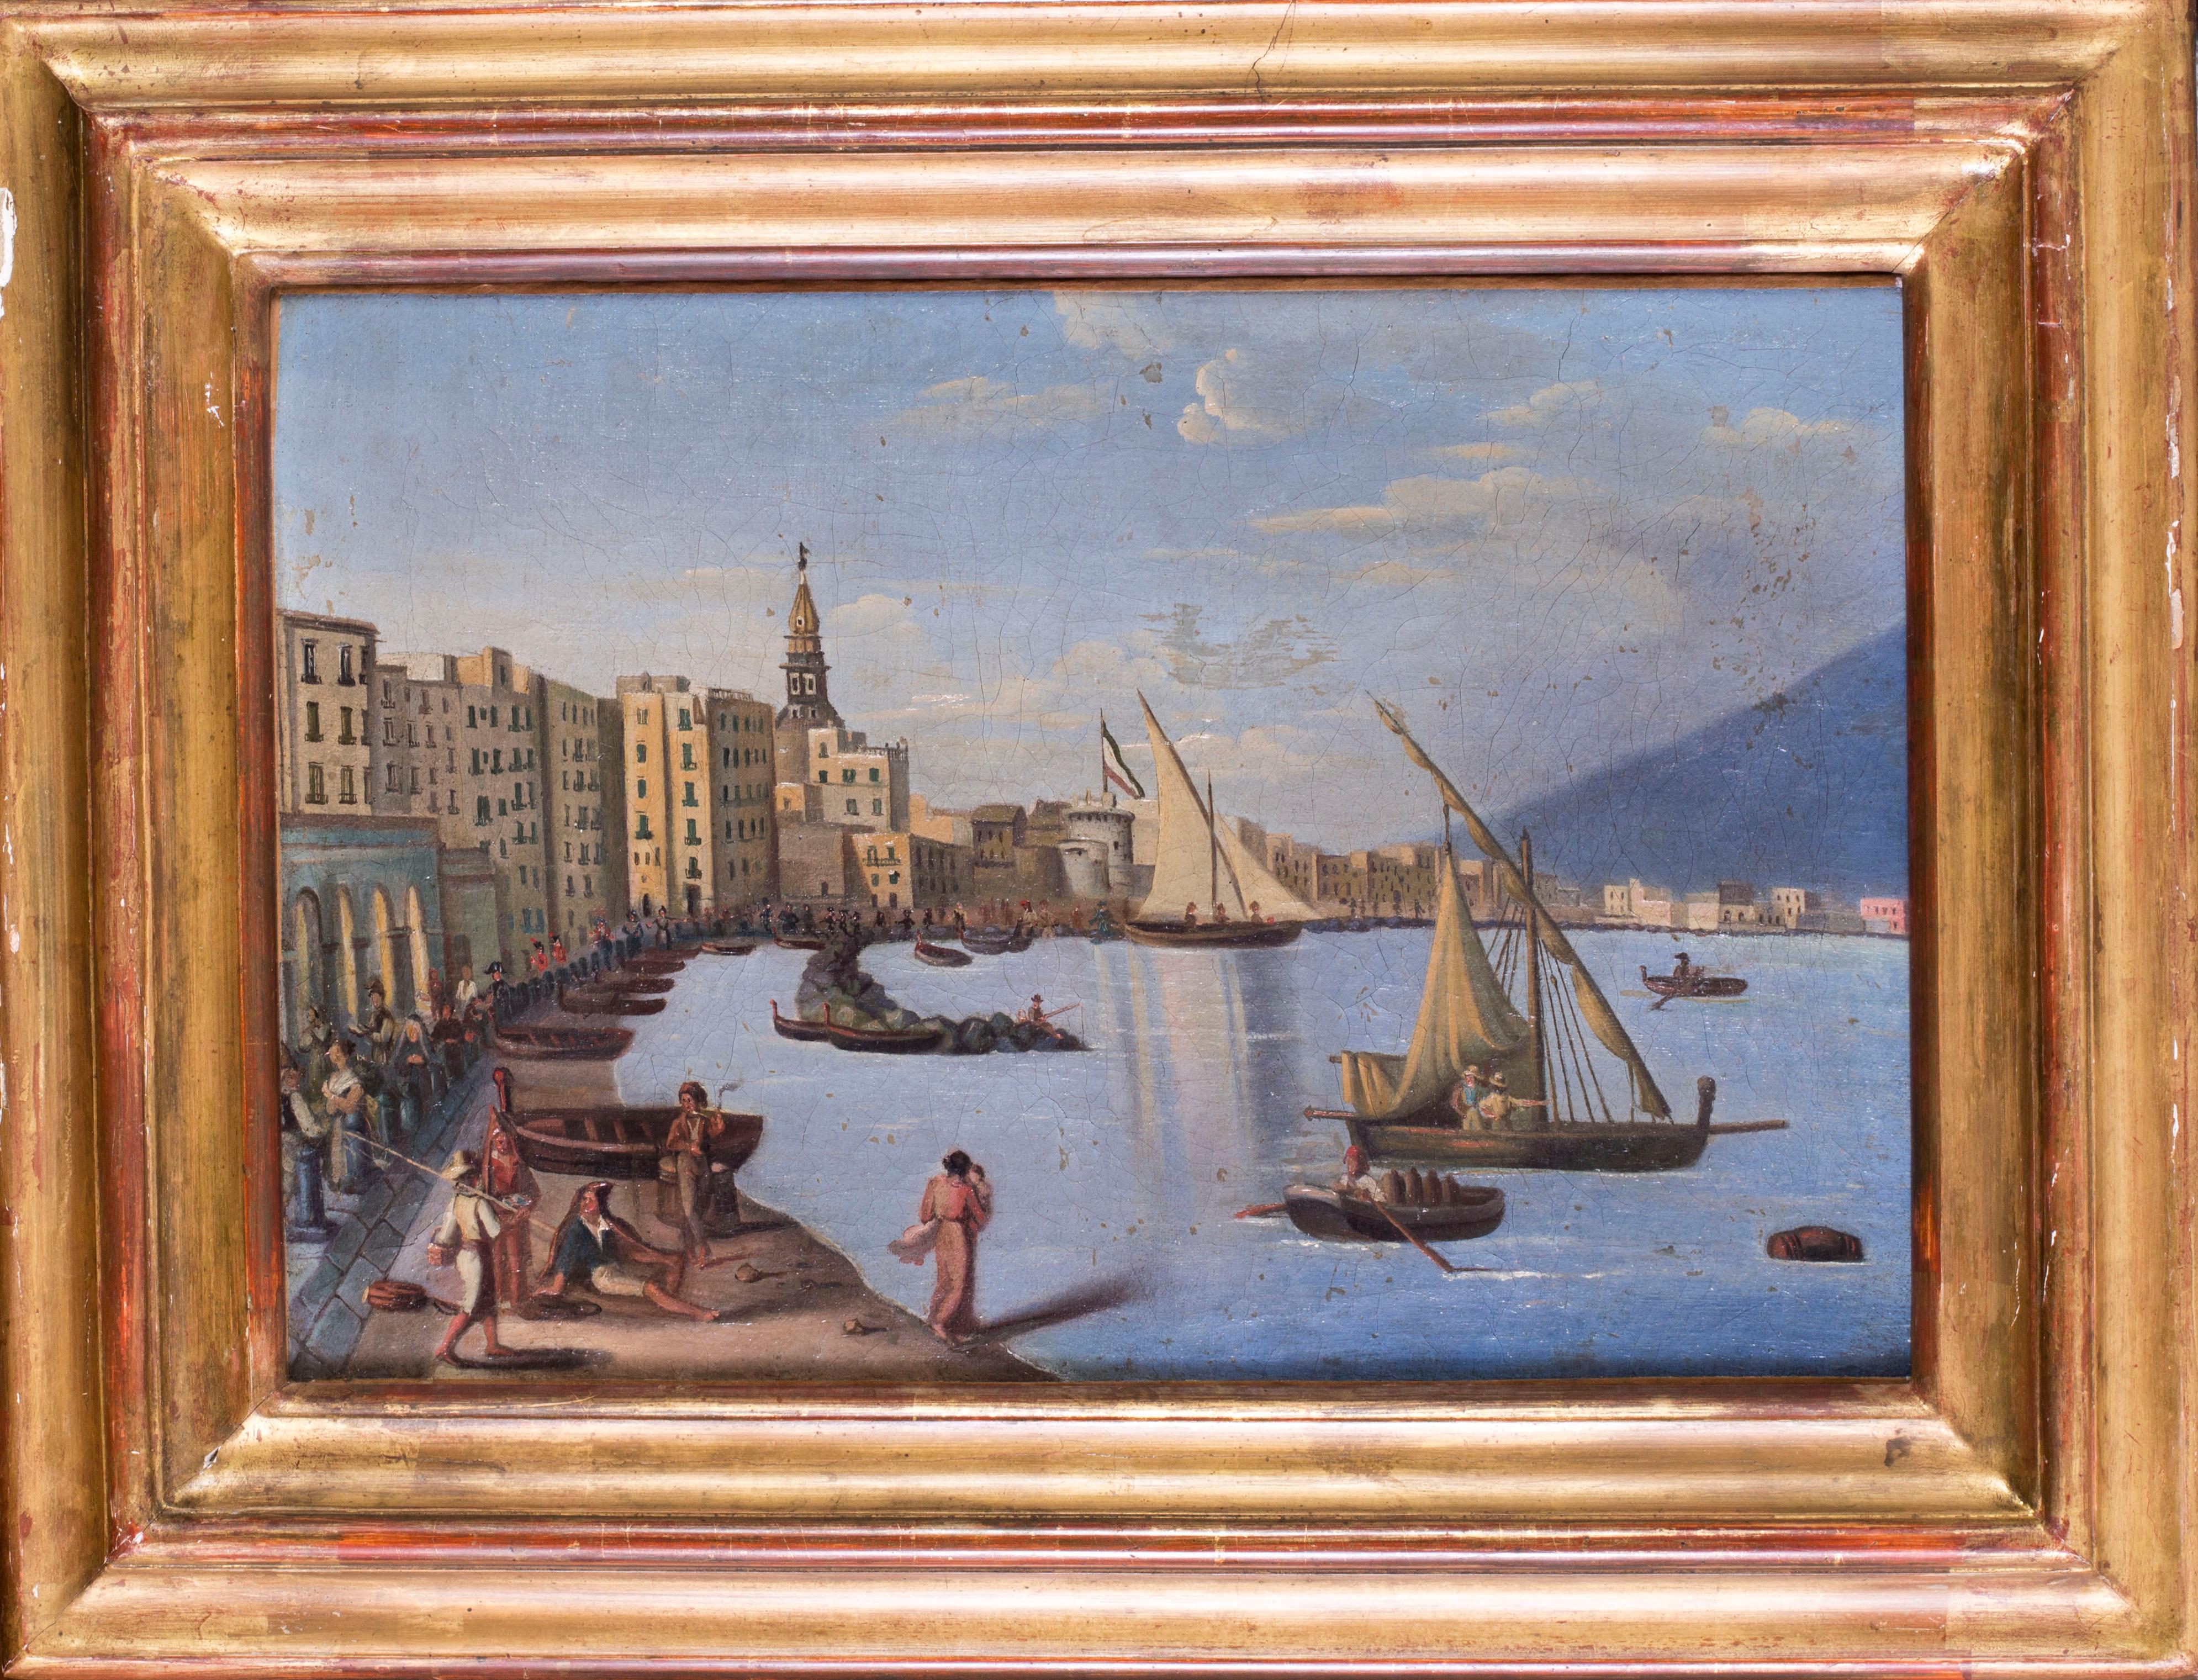 Naples pendant l'occupation napoléonienne, peinture à l'huile sur toile, vers 1810 - Painting de Unknown